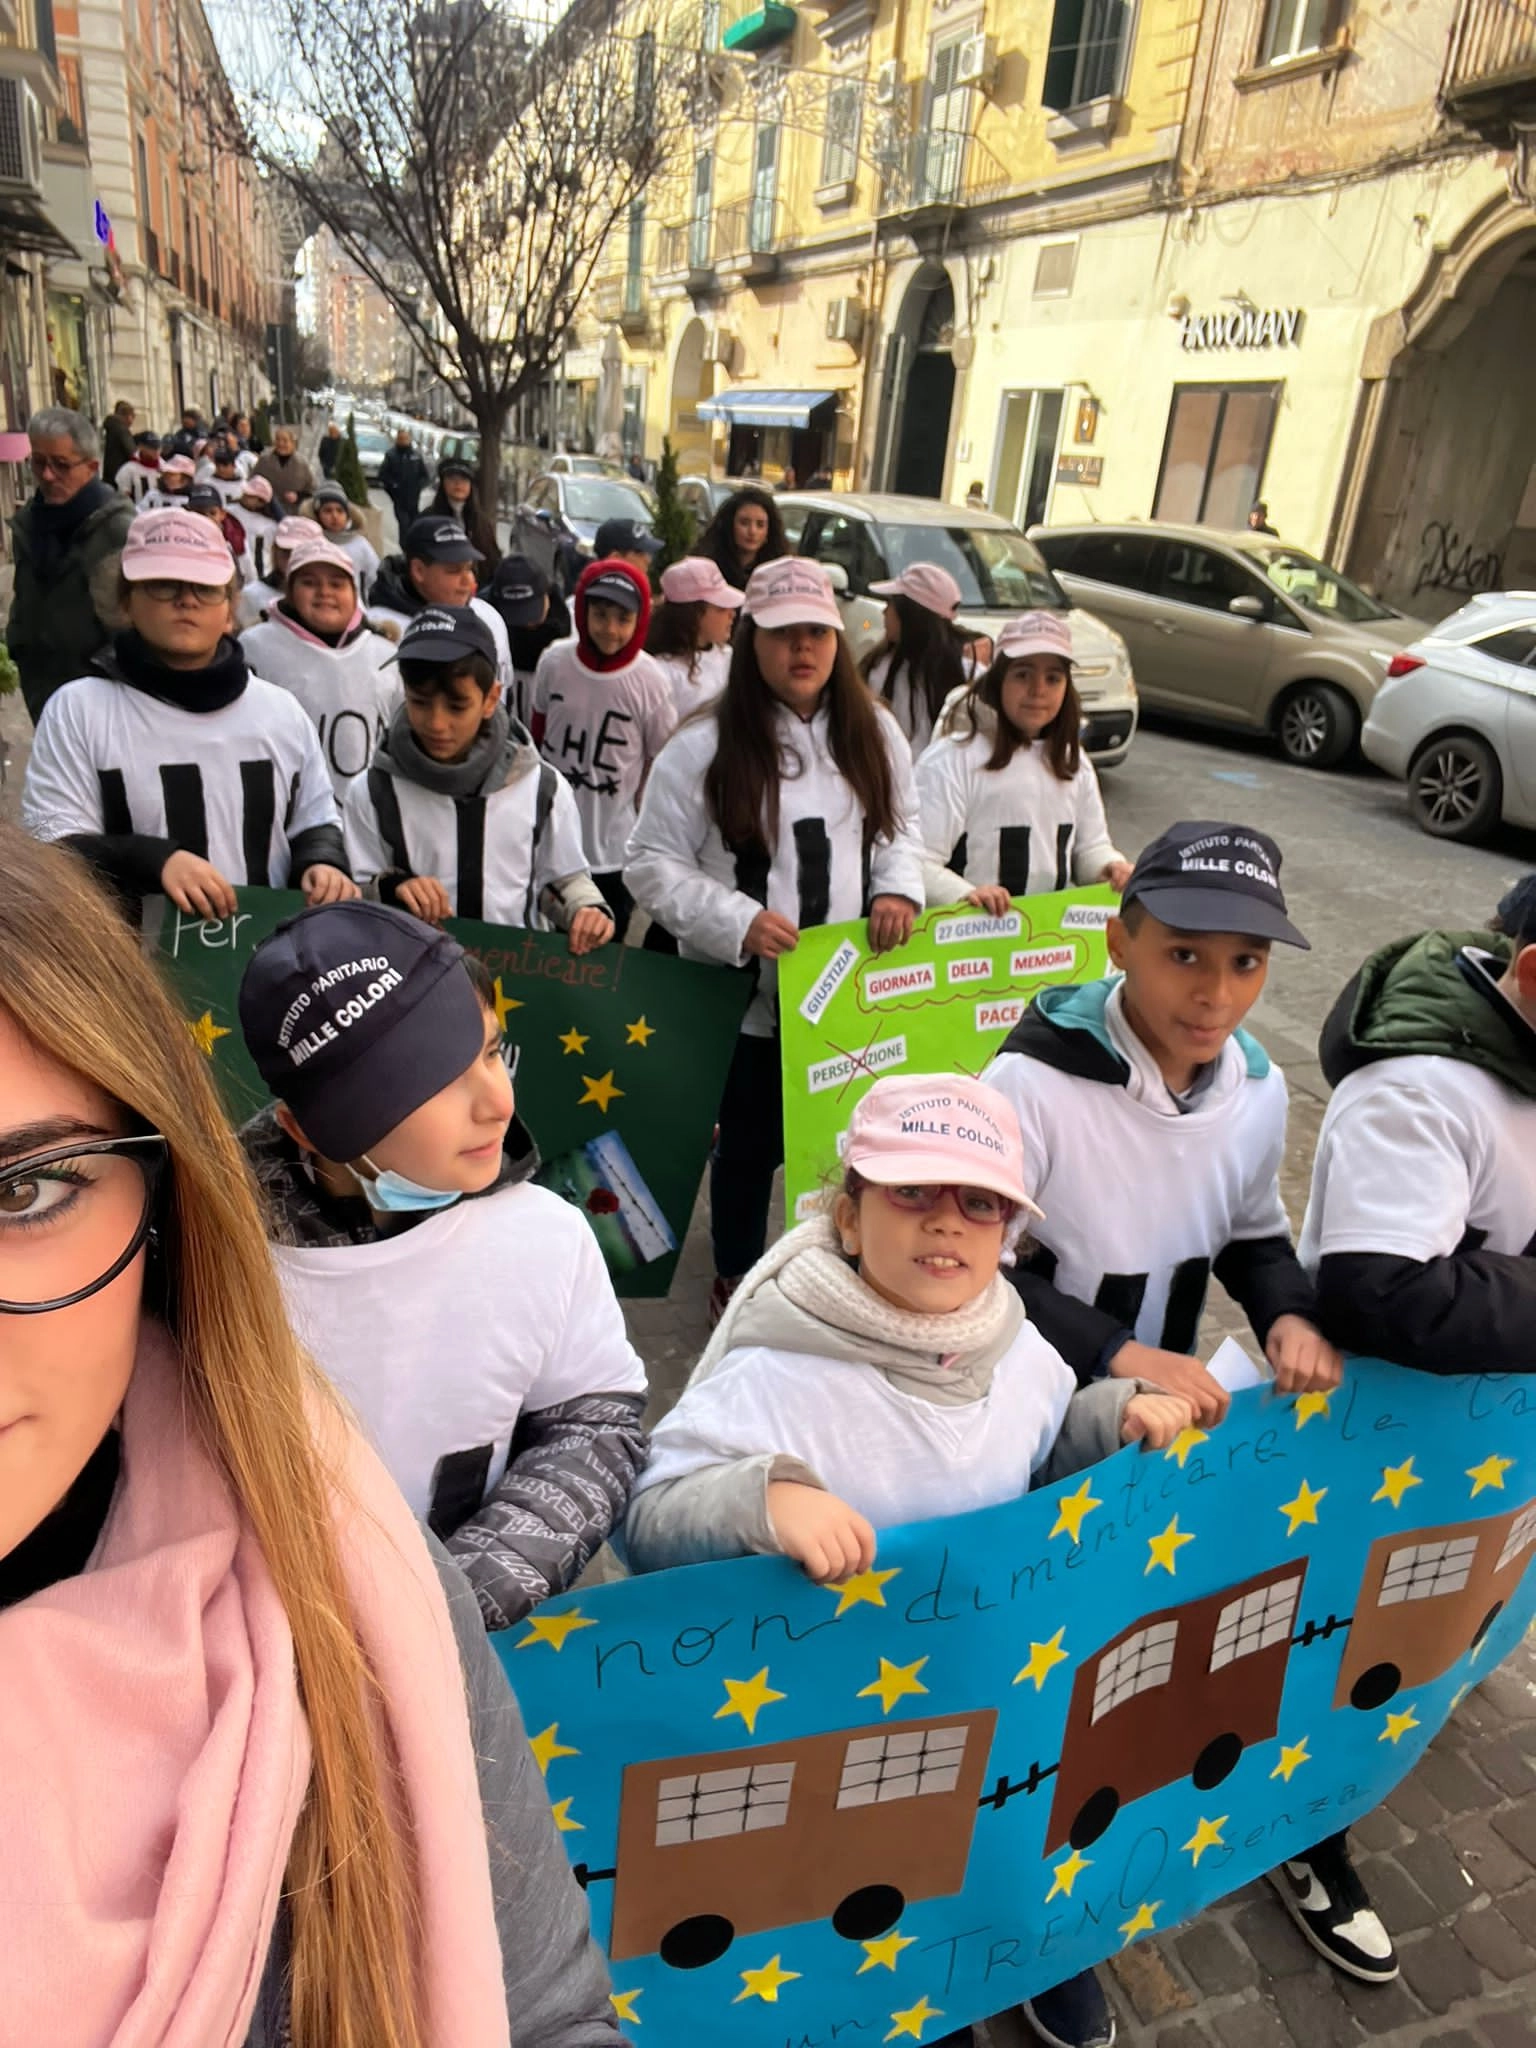 Foto 2 - Shoah, istituto “Mille Colori”: alunni hanno percorso via Roma sulle note de “La vita è bella”